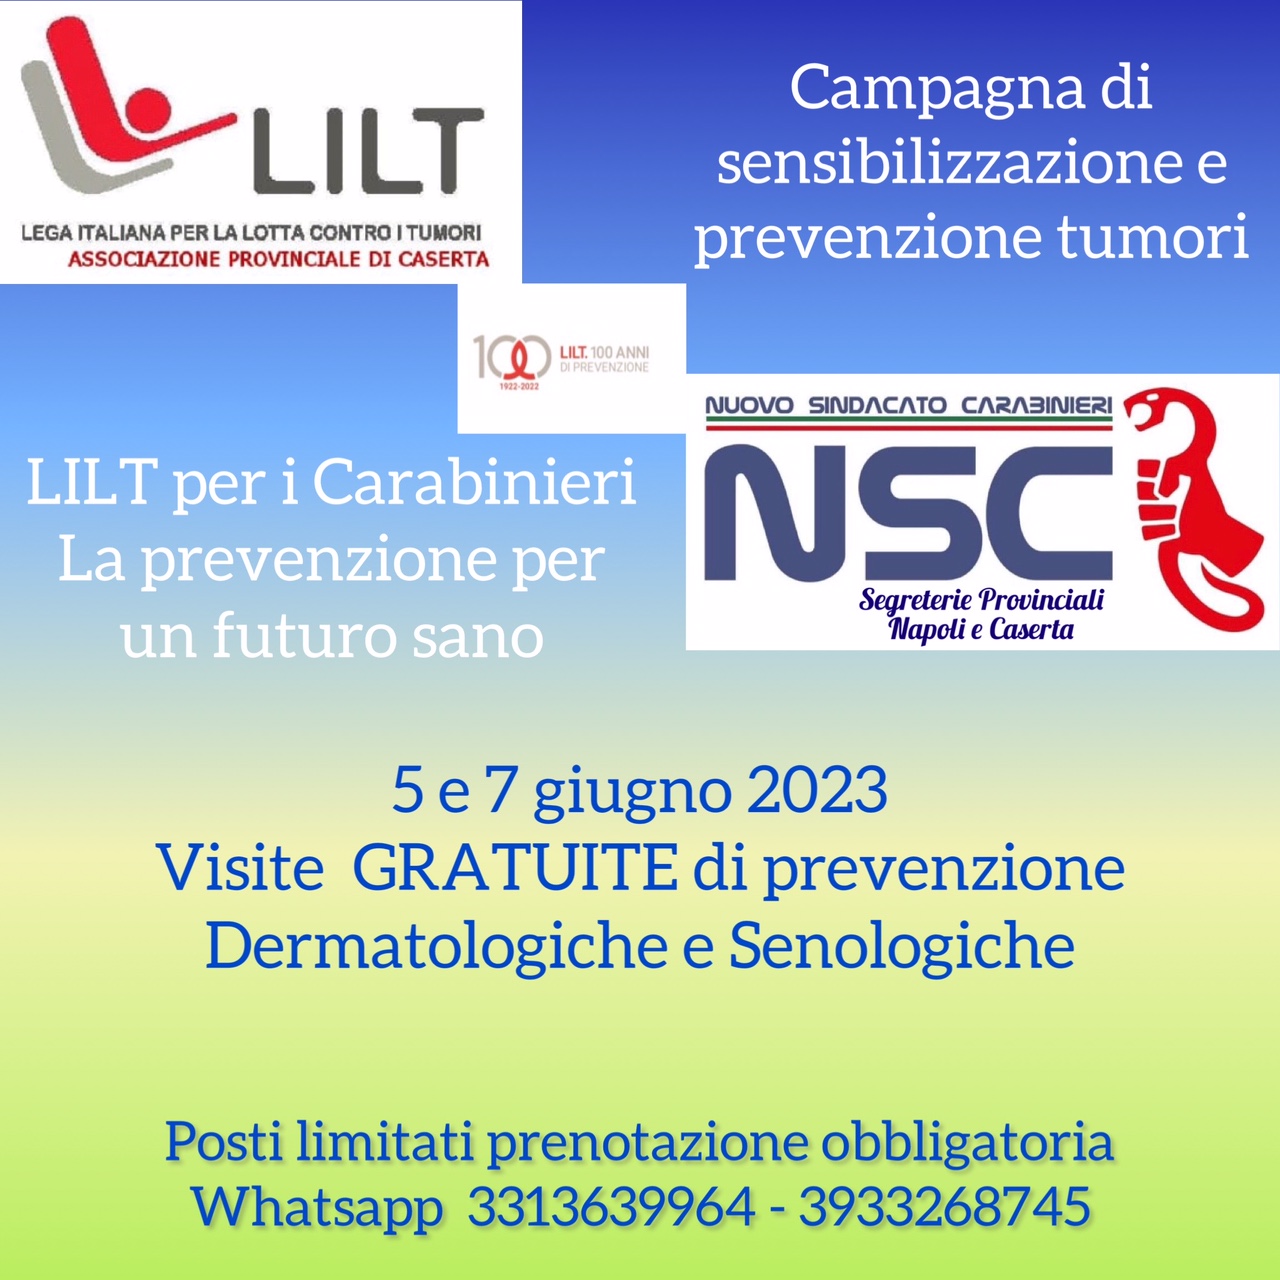 Locandina visite oncologiche LILT LILT CASERTA ACCANTO A NSC: CAMPAGNA DI PREVENZIONE ONCOLOGICA PER I CARABINIERI